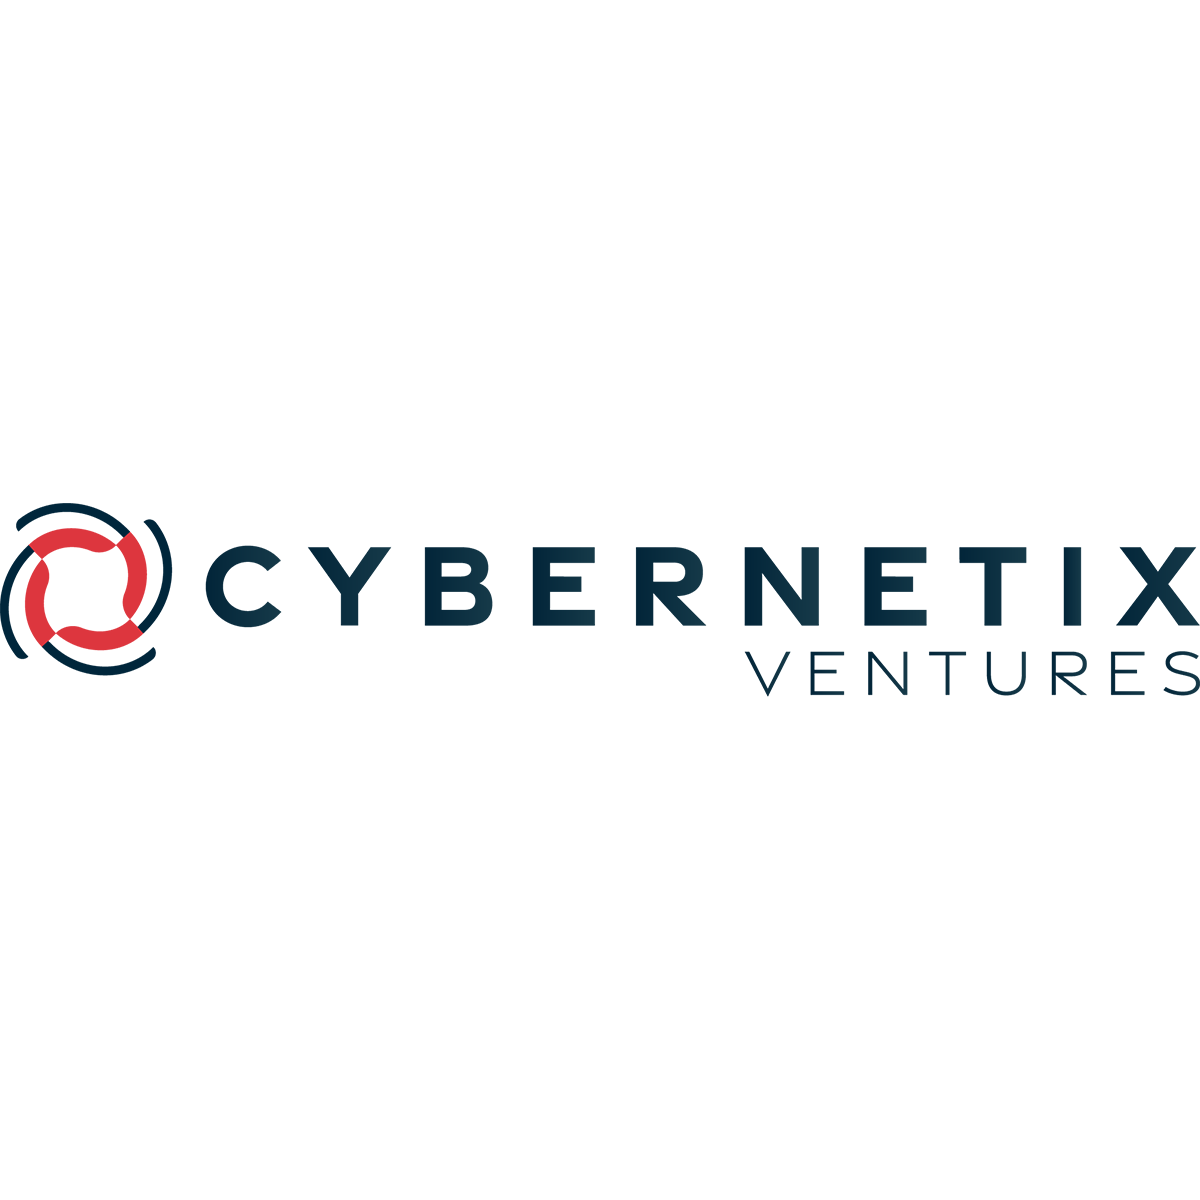 Cybernetix Ventures